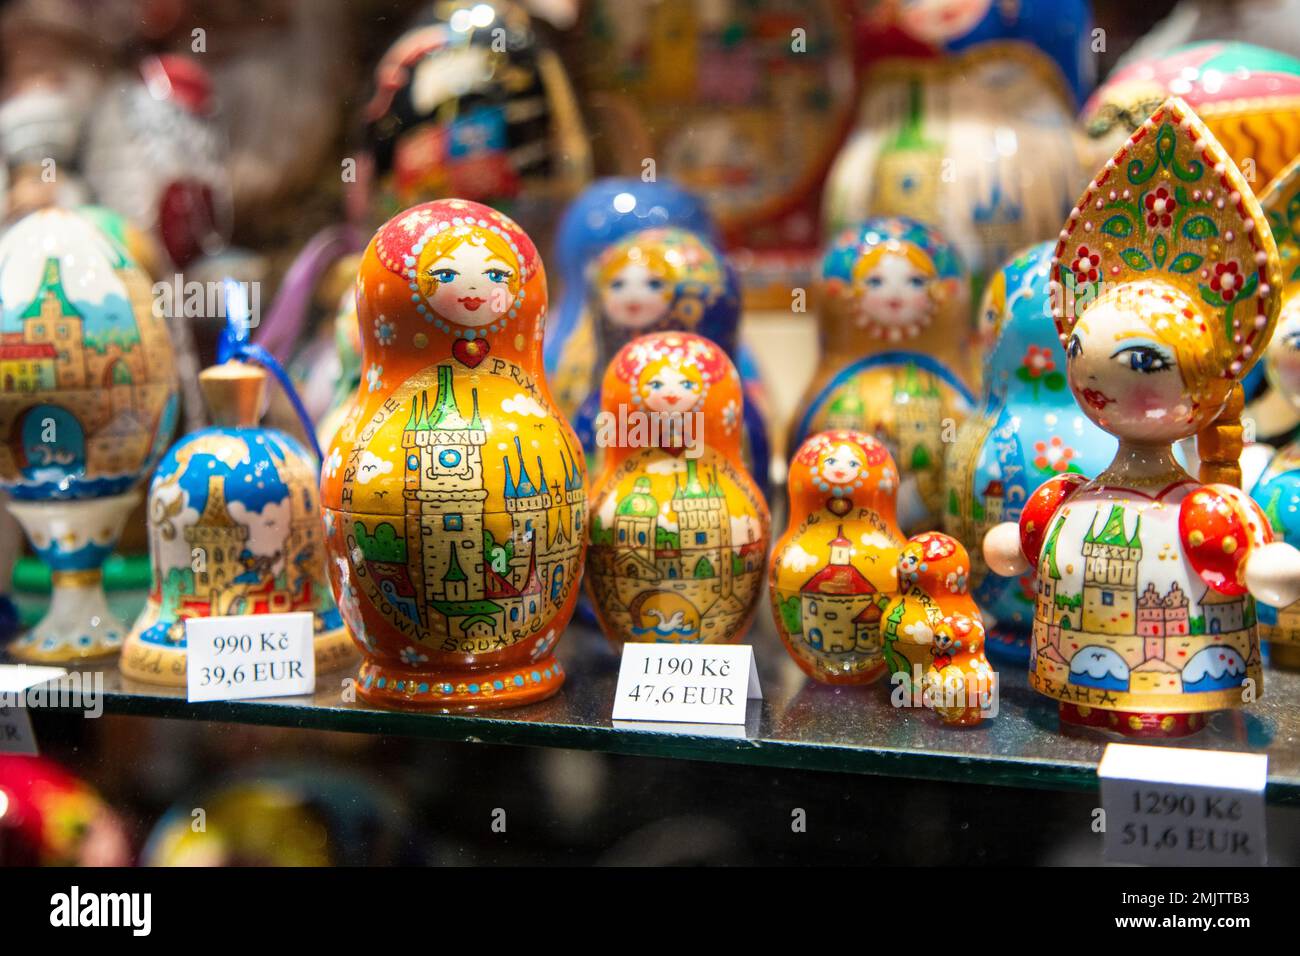 Muñecas matryoshka en exhibición en una tienda de recuerdos, Praga, República Checa Foto de stock